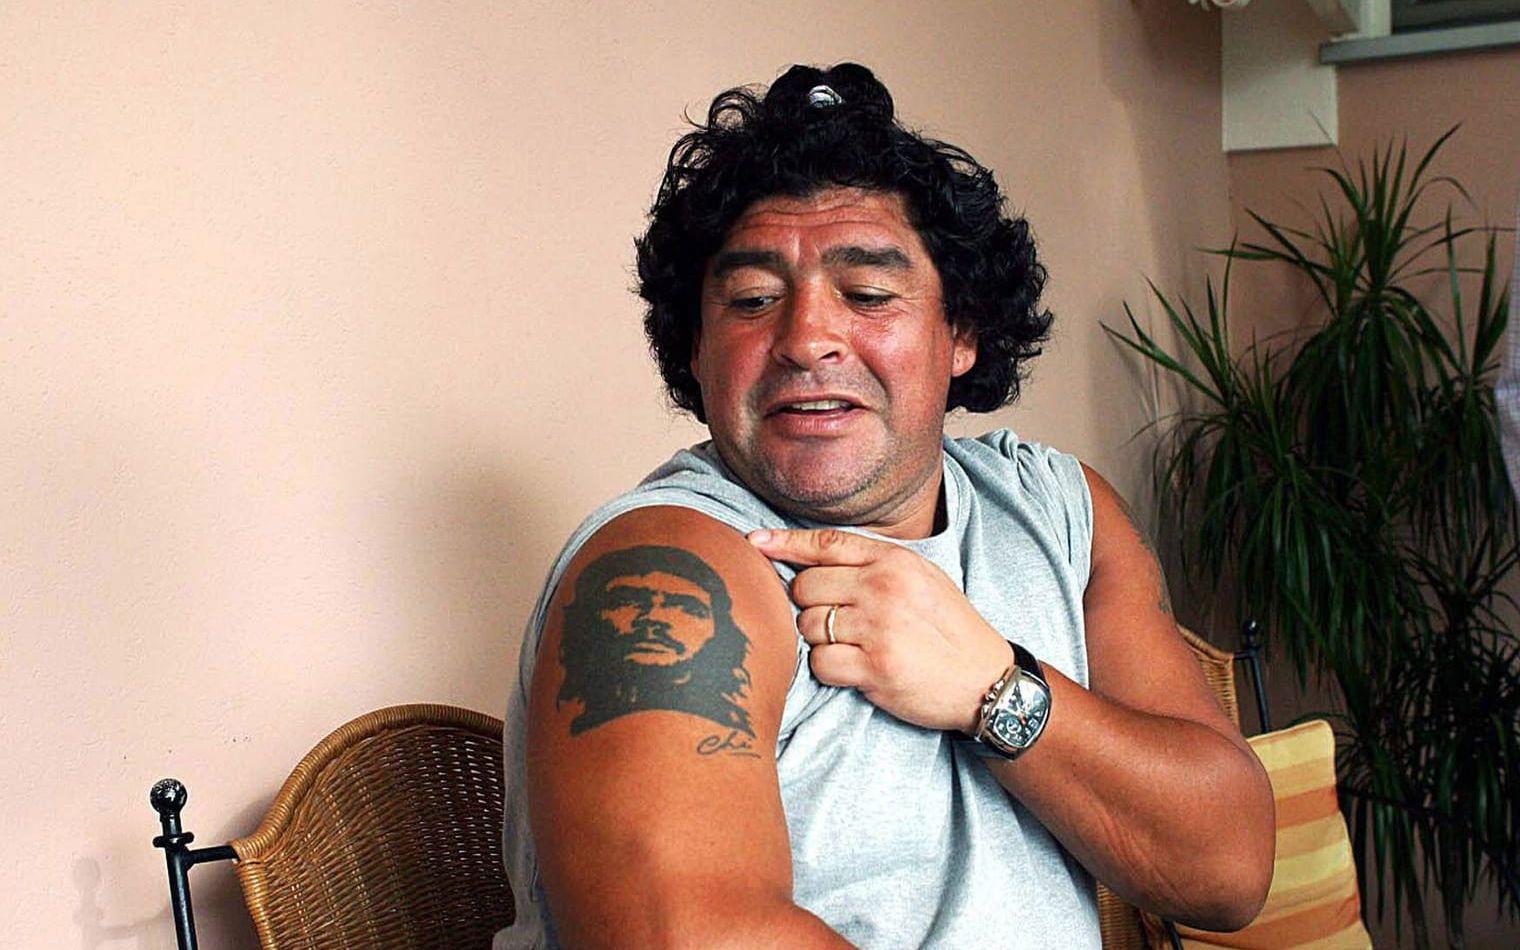 En av världens främsta fotbollsspelare genom tiderna har valt att tatuera in två kontroversiella profiler på sin kropp, i Fidel Castro och Che Guevara. Den senare syns på bilden. Bild: Bildbyrån.